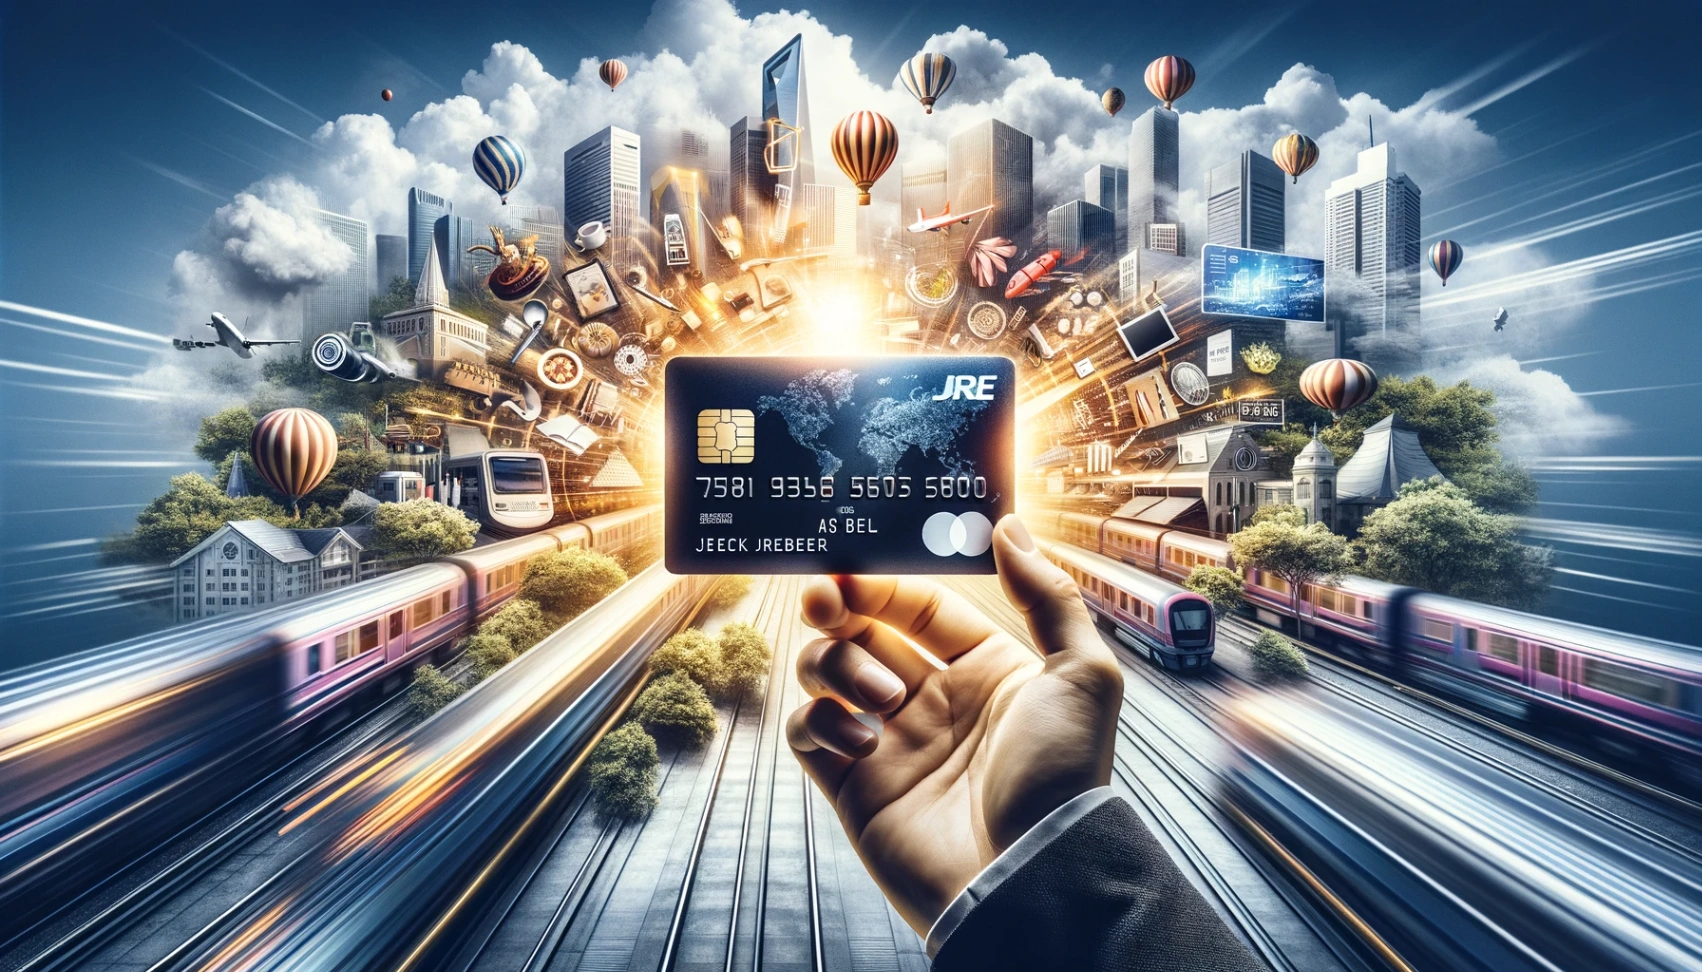 JRE クレジットカード - オンライン申し込みの方法解説